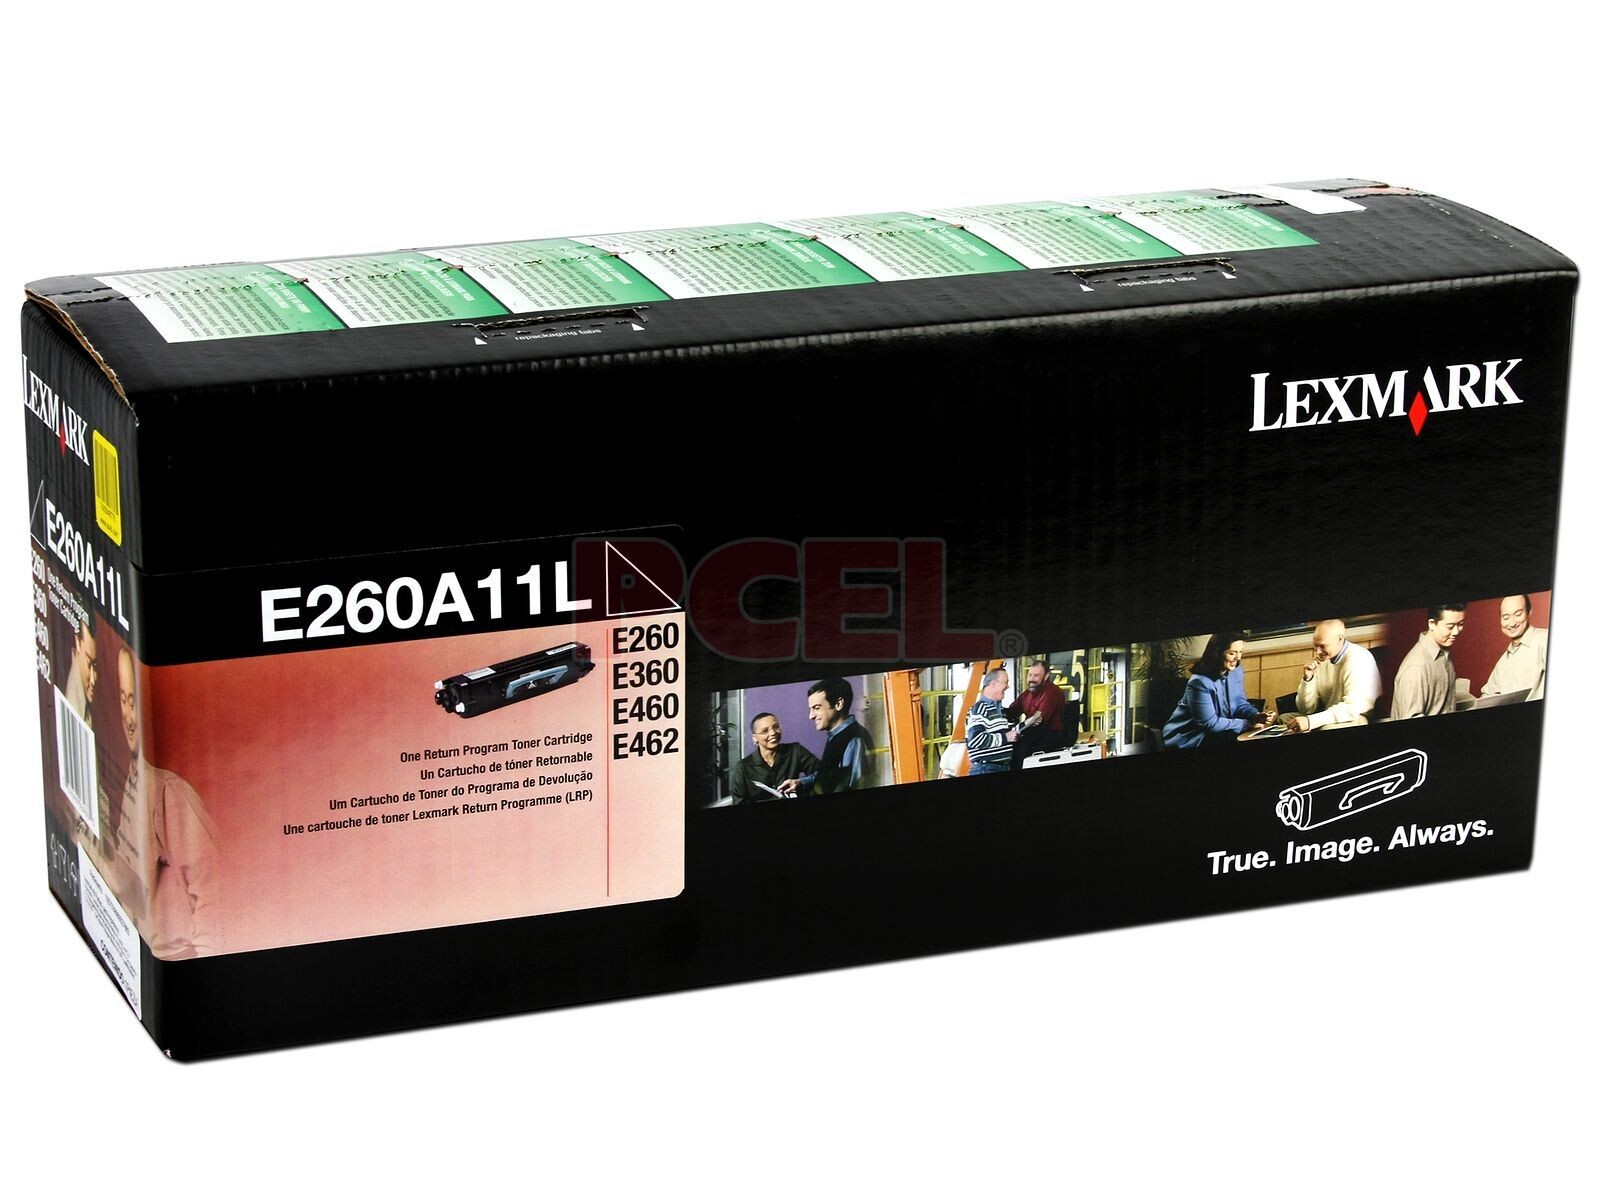 LEXMARK TONER E260A11L E260/E360/E460 3500 COPIAS - Lexmark Toner E260a11l E260/e360/e460 3500 Copias 